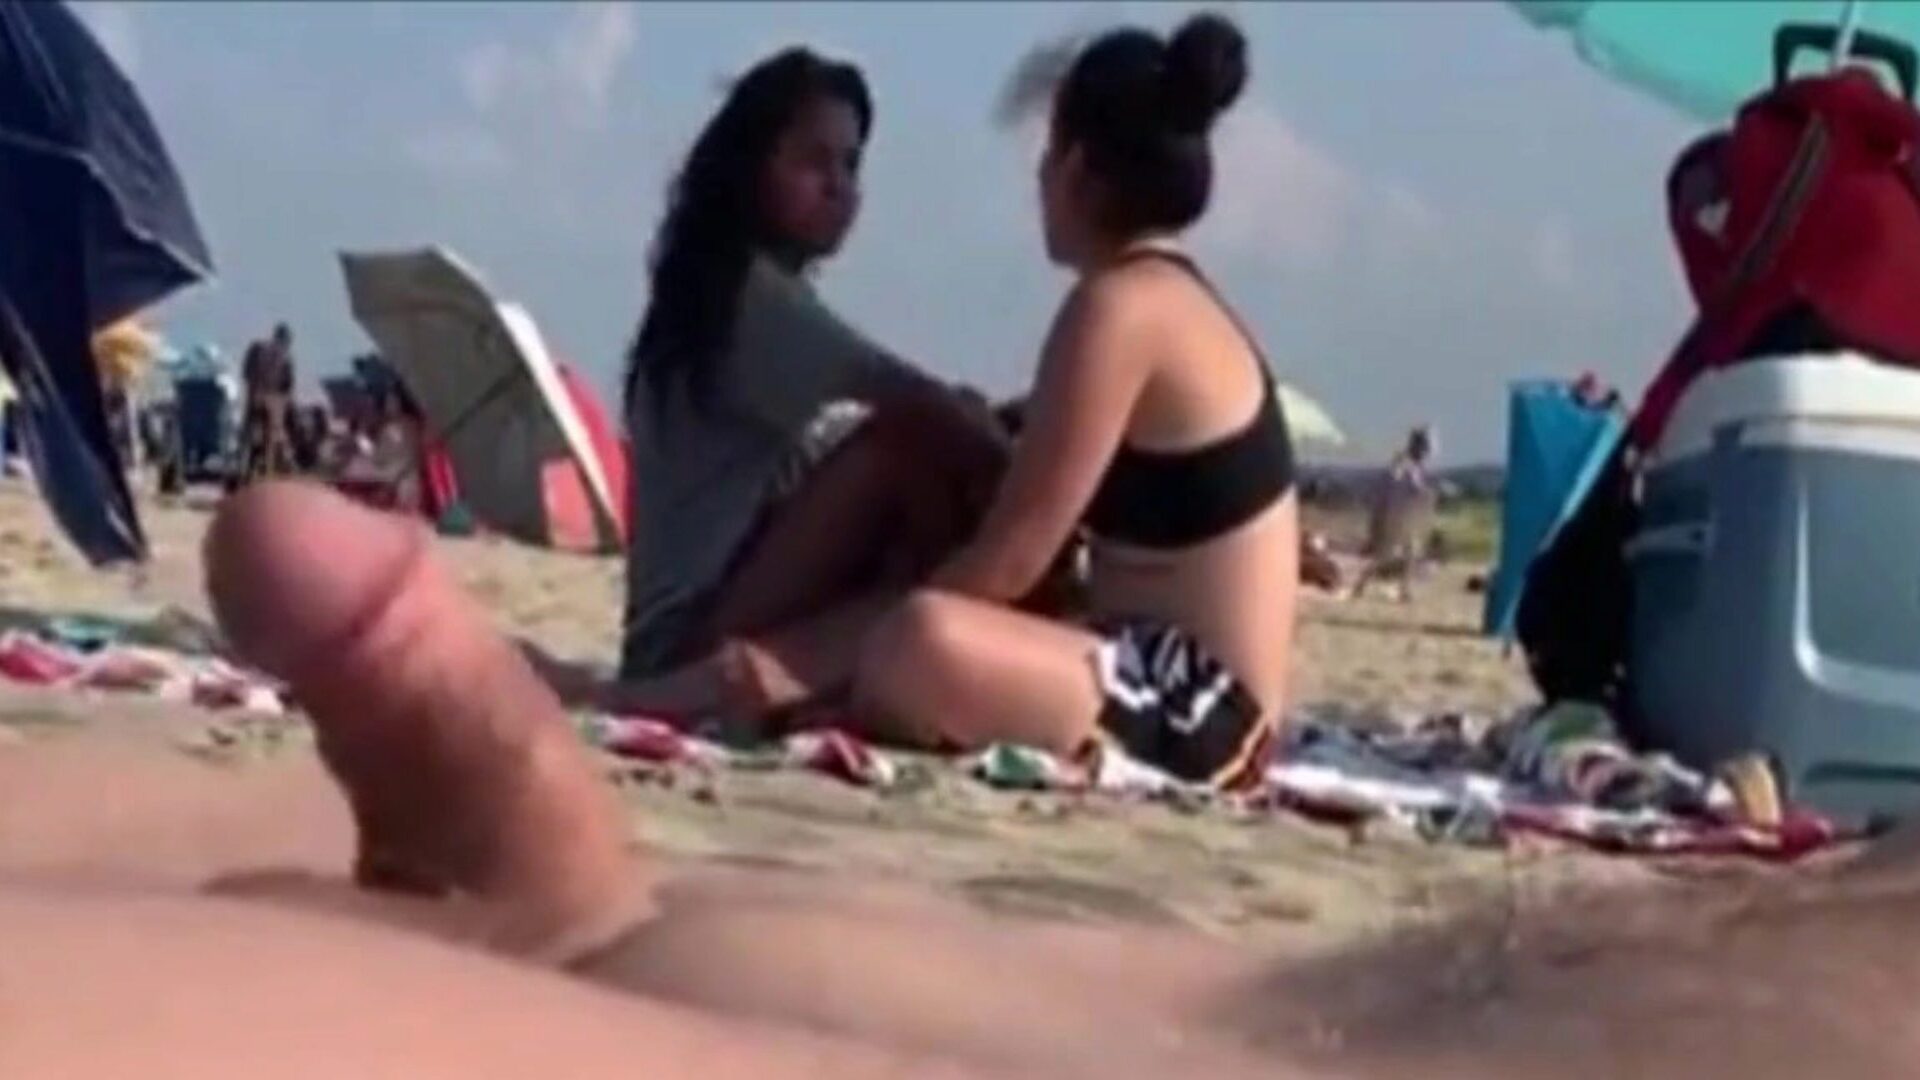 δύο κορίτσια παρατηρούν το σκληρό μου σε μια δημόσια παραλία δύο ομορφιές που με παρακολουθούν στο wang μου άφησαν να φύγουν ..